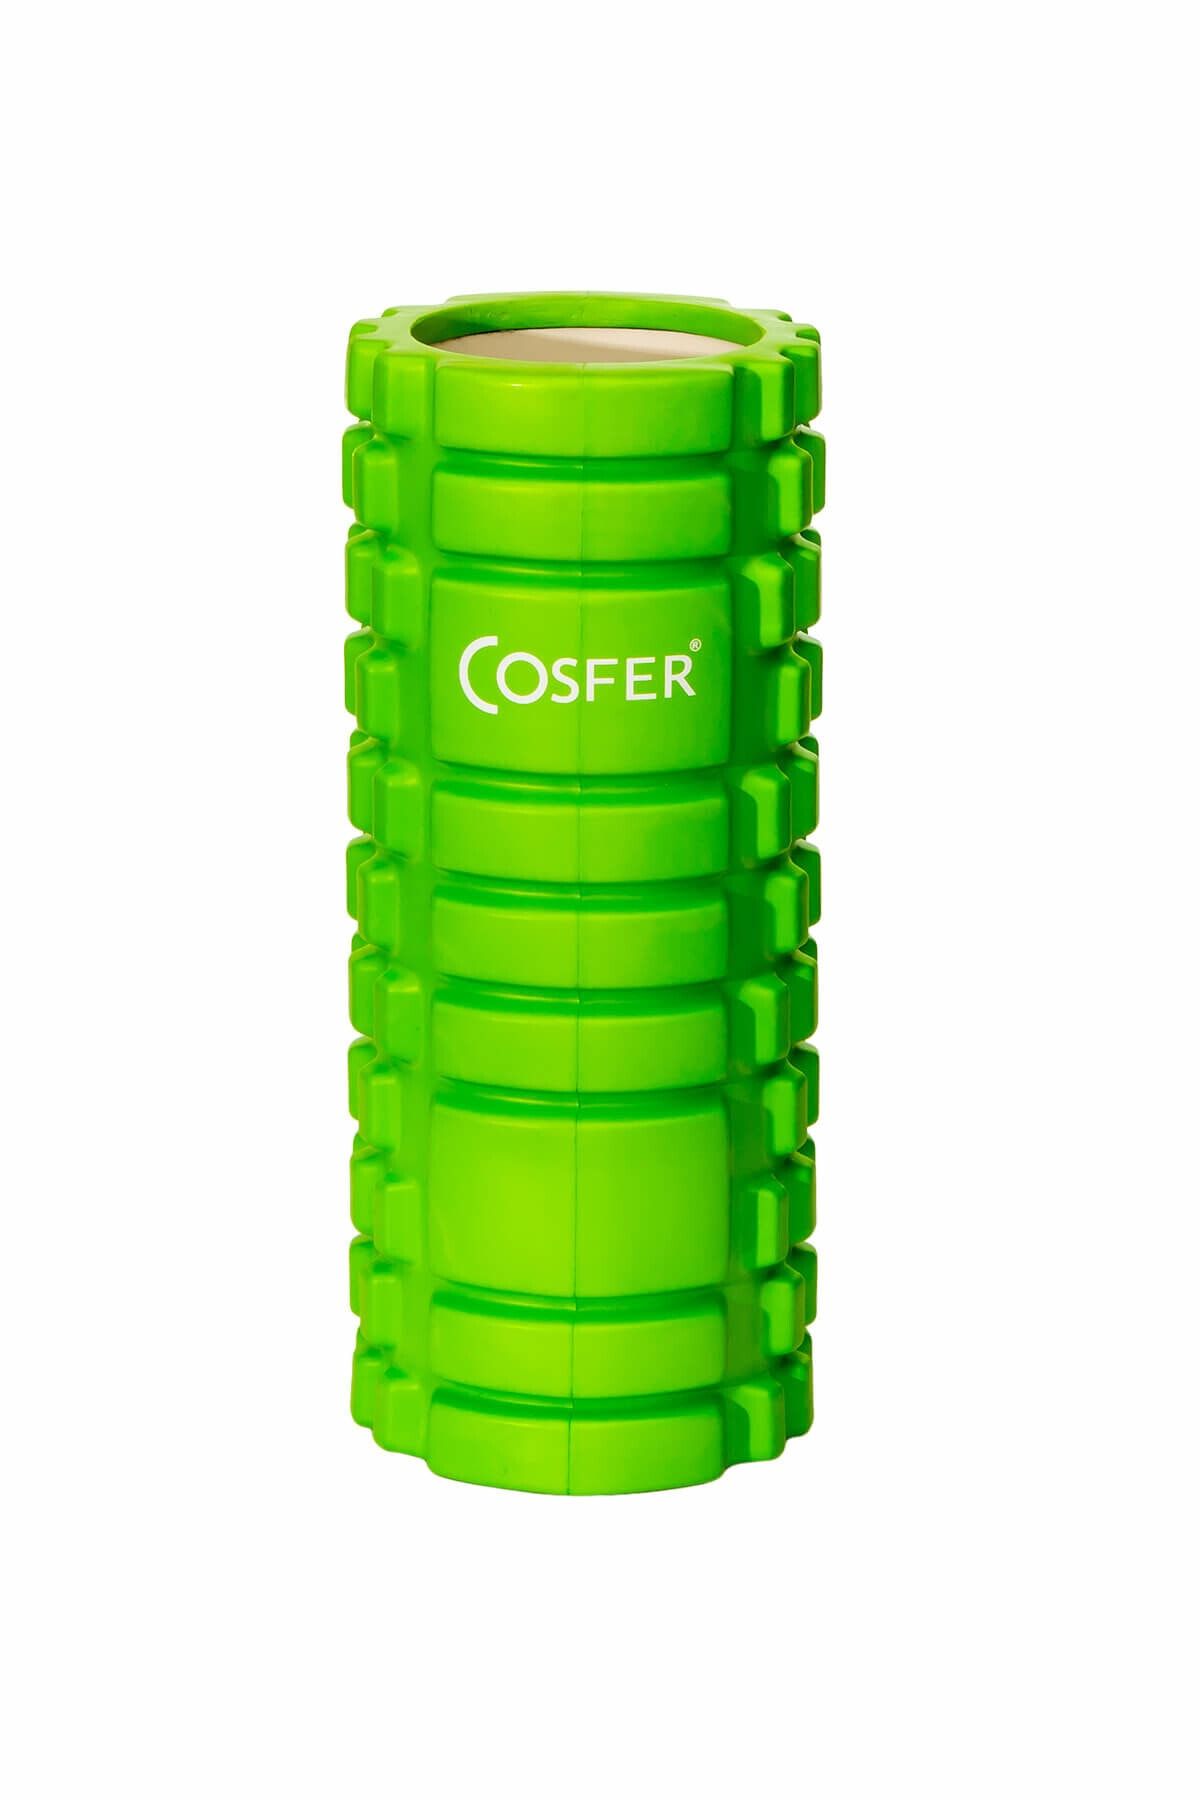 Cosfer Csf-56y Hollow Foam Roller Yeşil